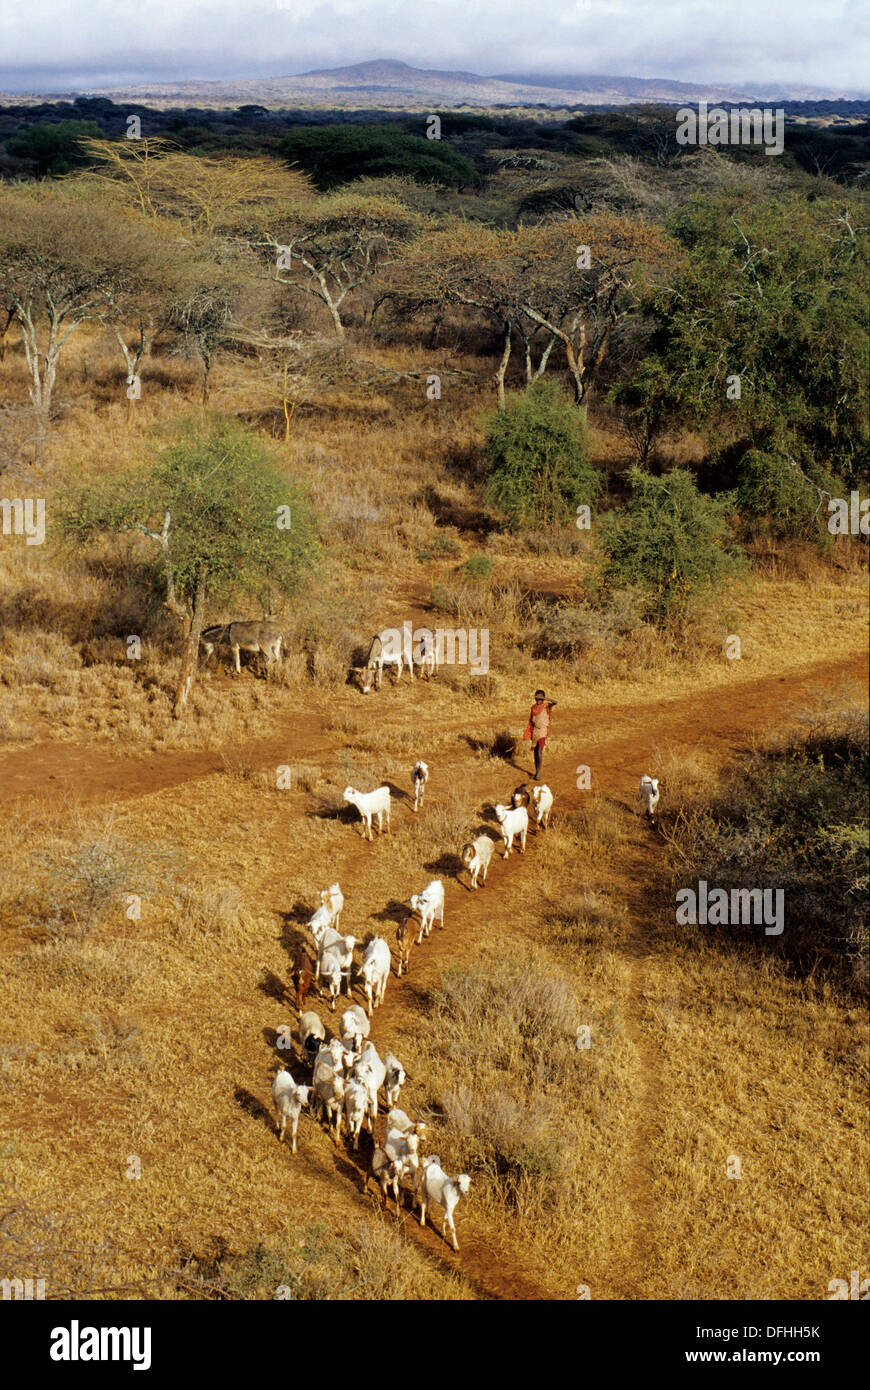 Vue aerienne de la savane aux alrededores de Namanga,Kenia,Afrique Foto de stock